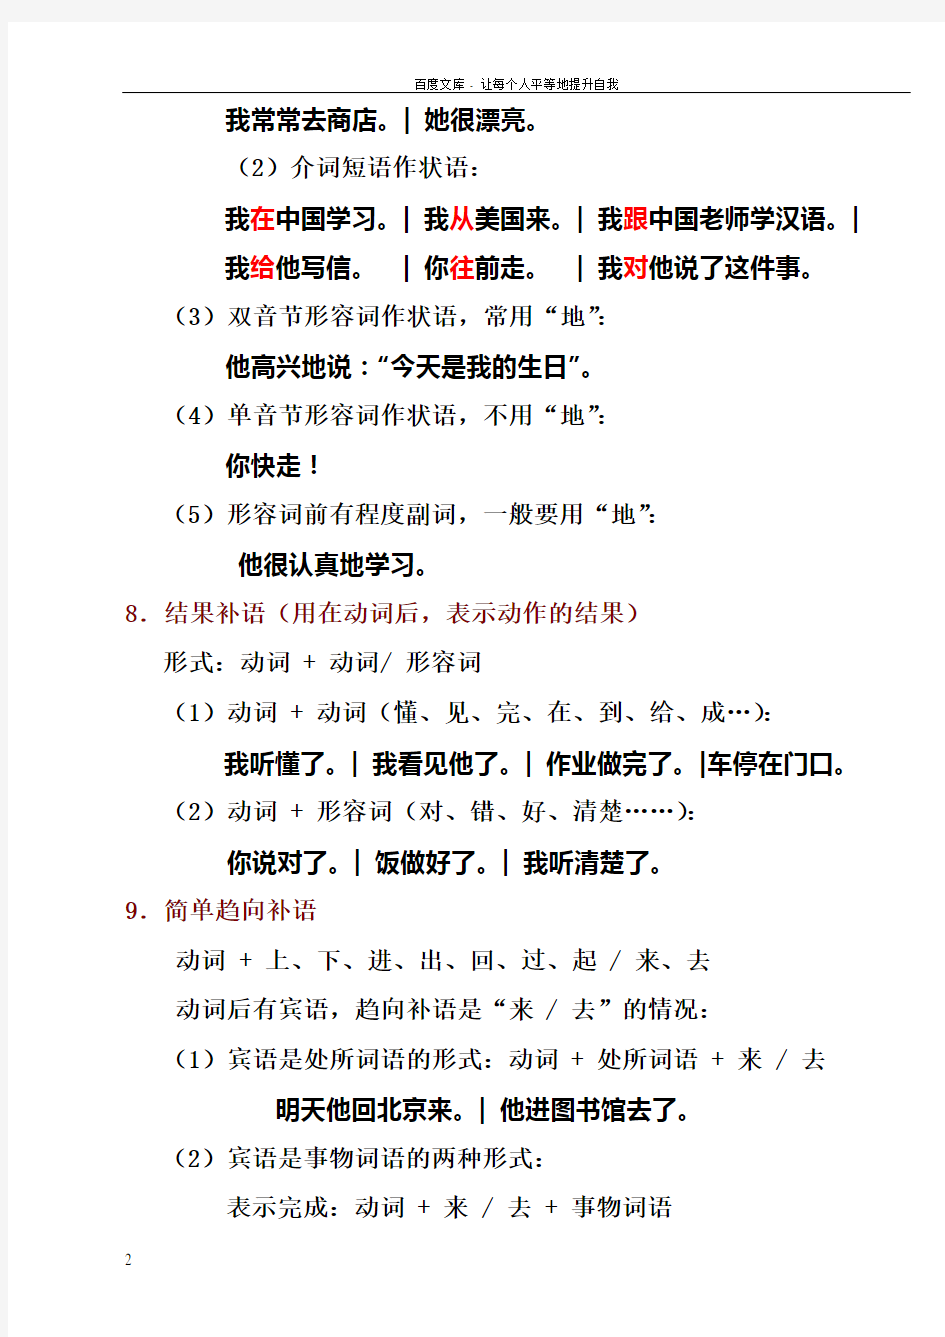 对外汉语教学的的40个语法点